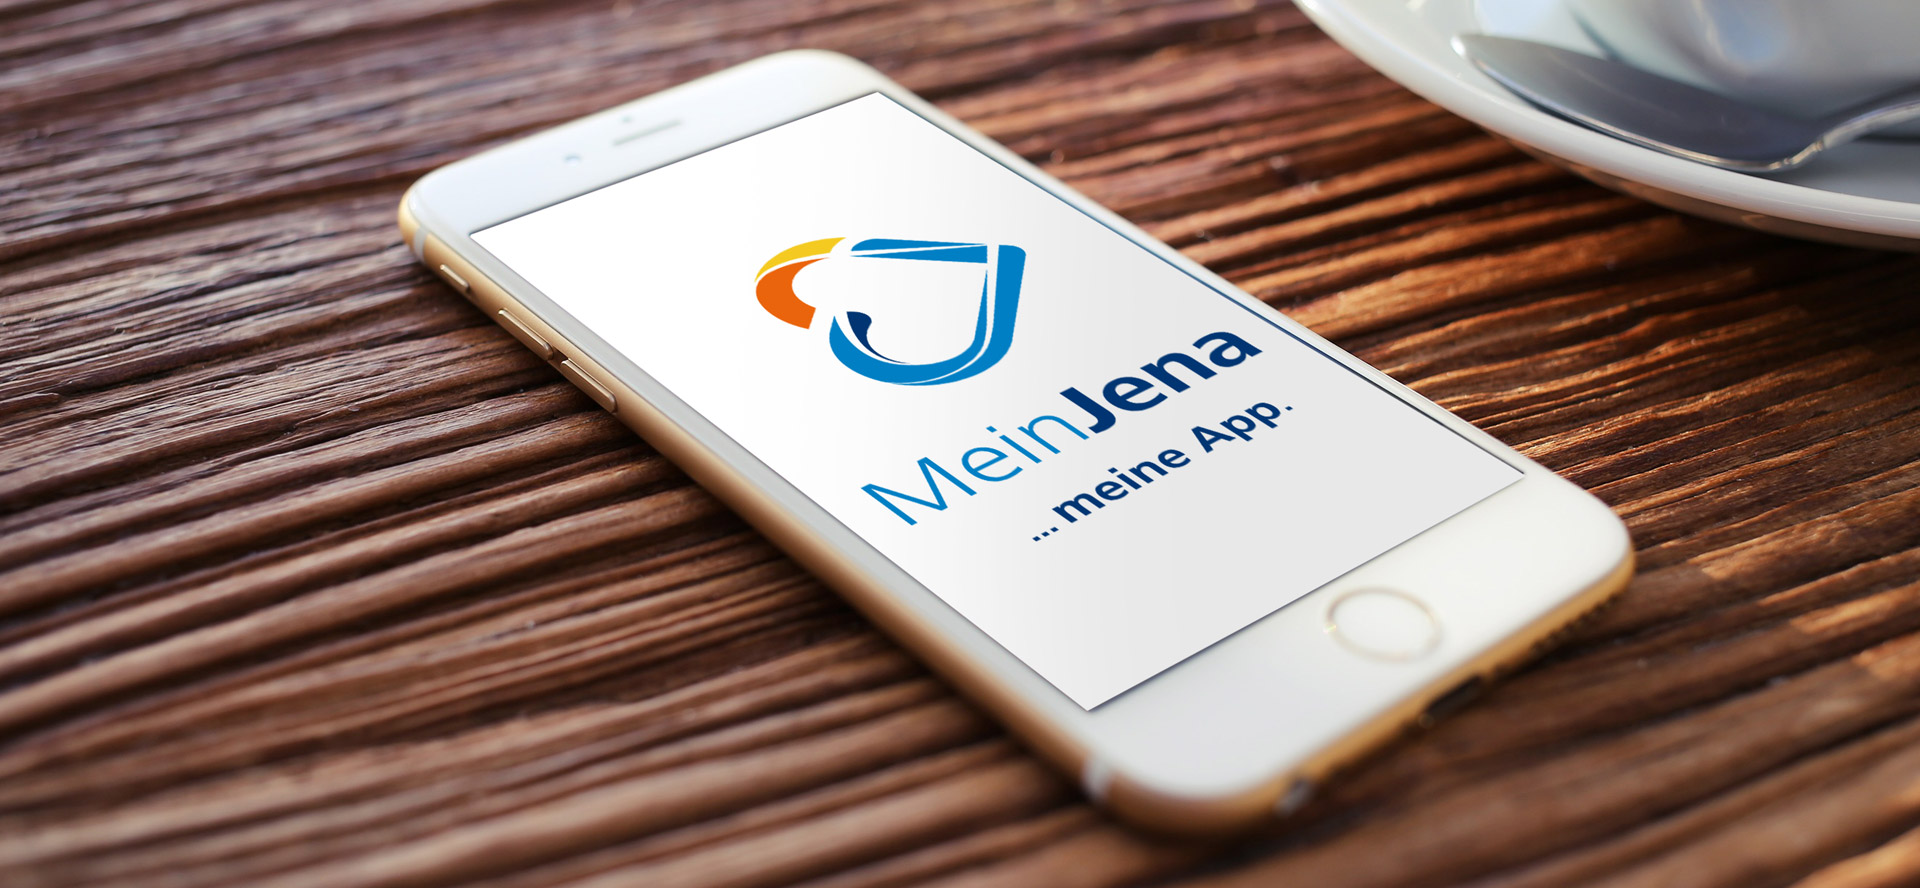 MeinJena – kartinka realisiert Wort-/Bildmarke und Markteinführungskampagne für die neue App